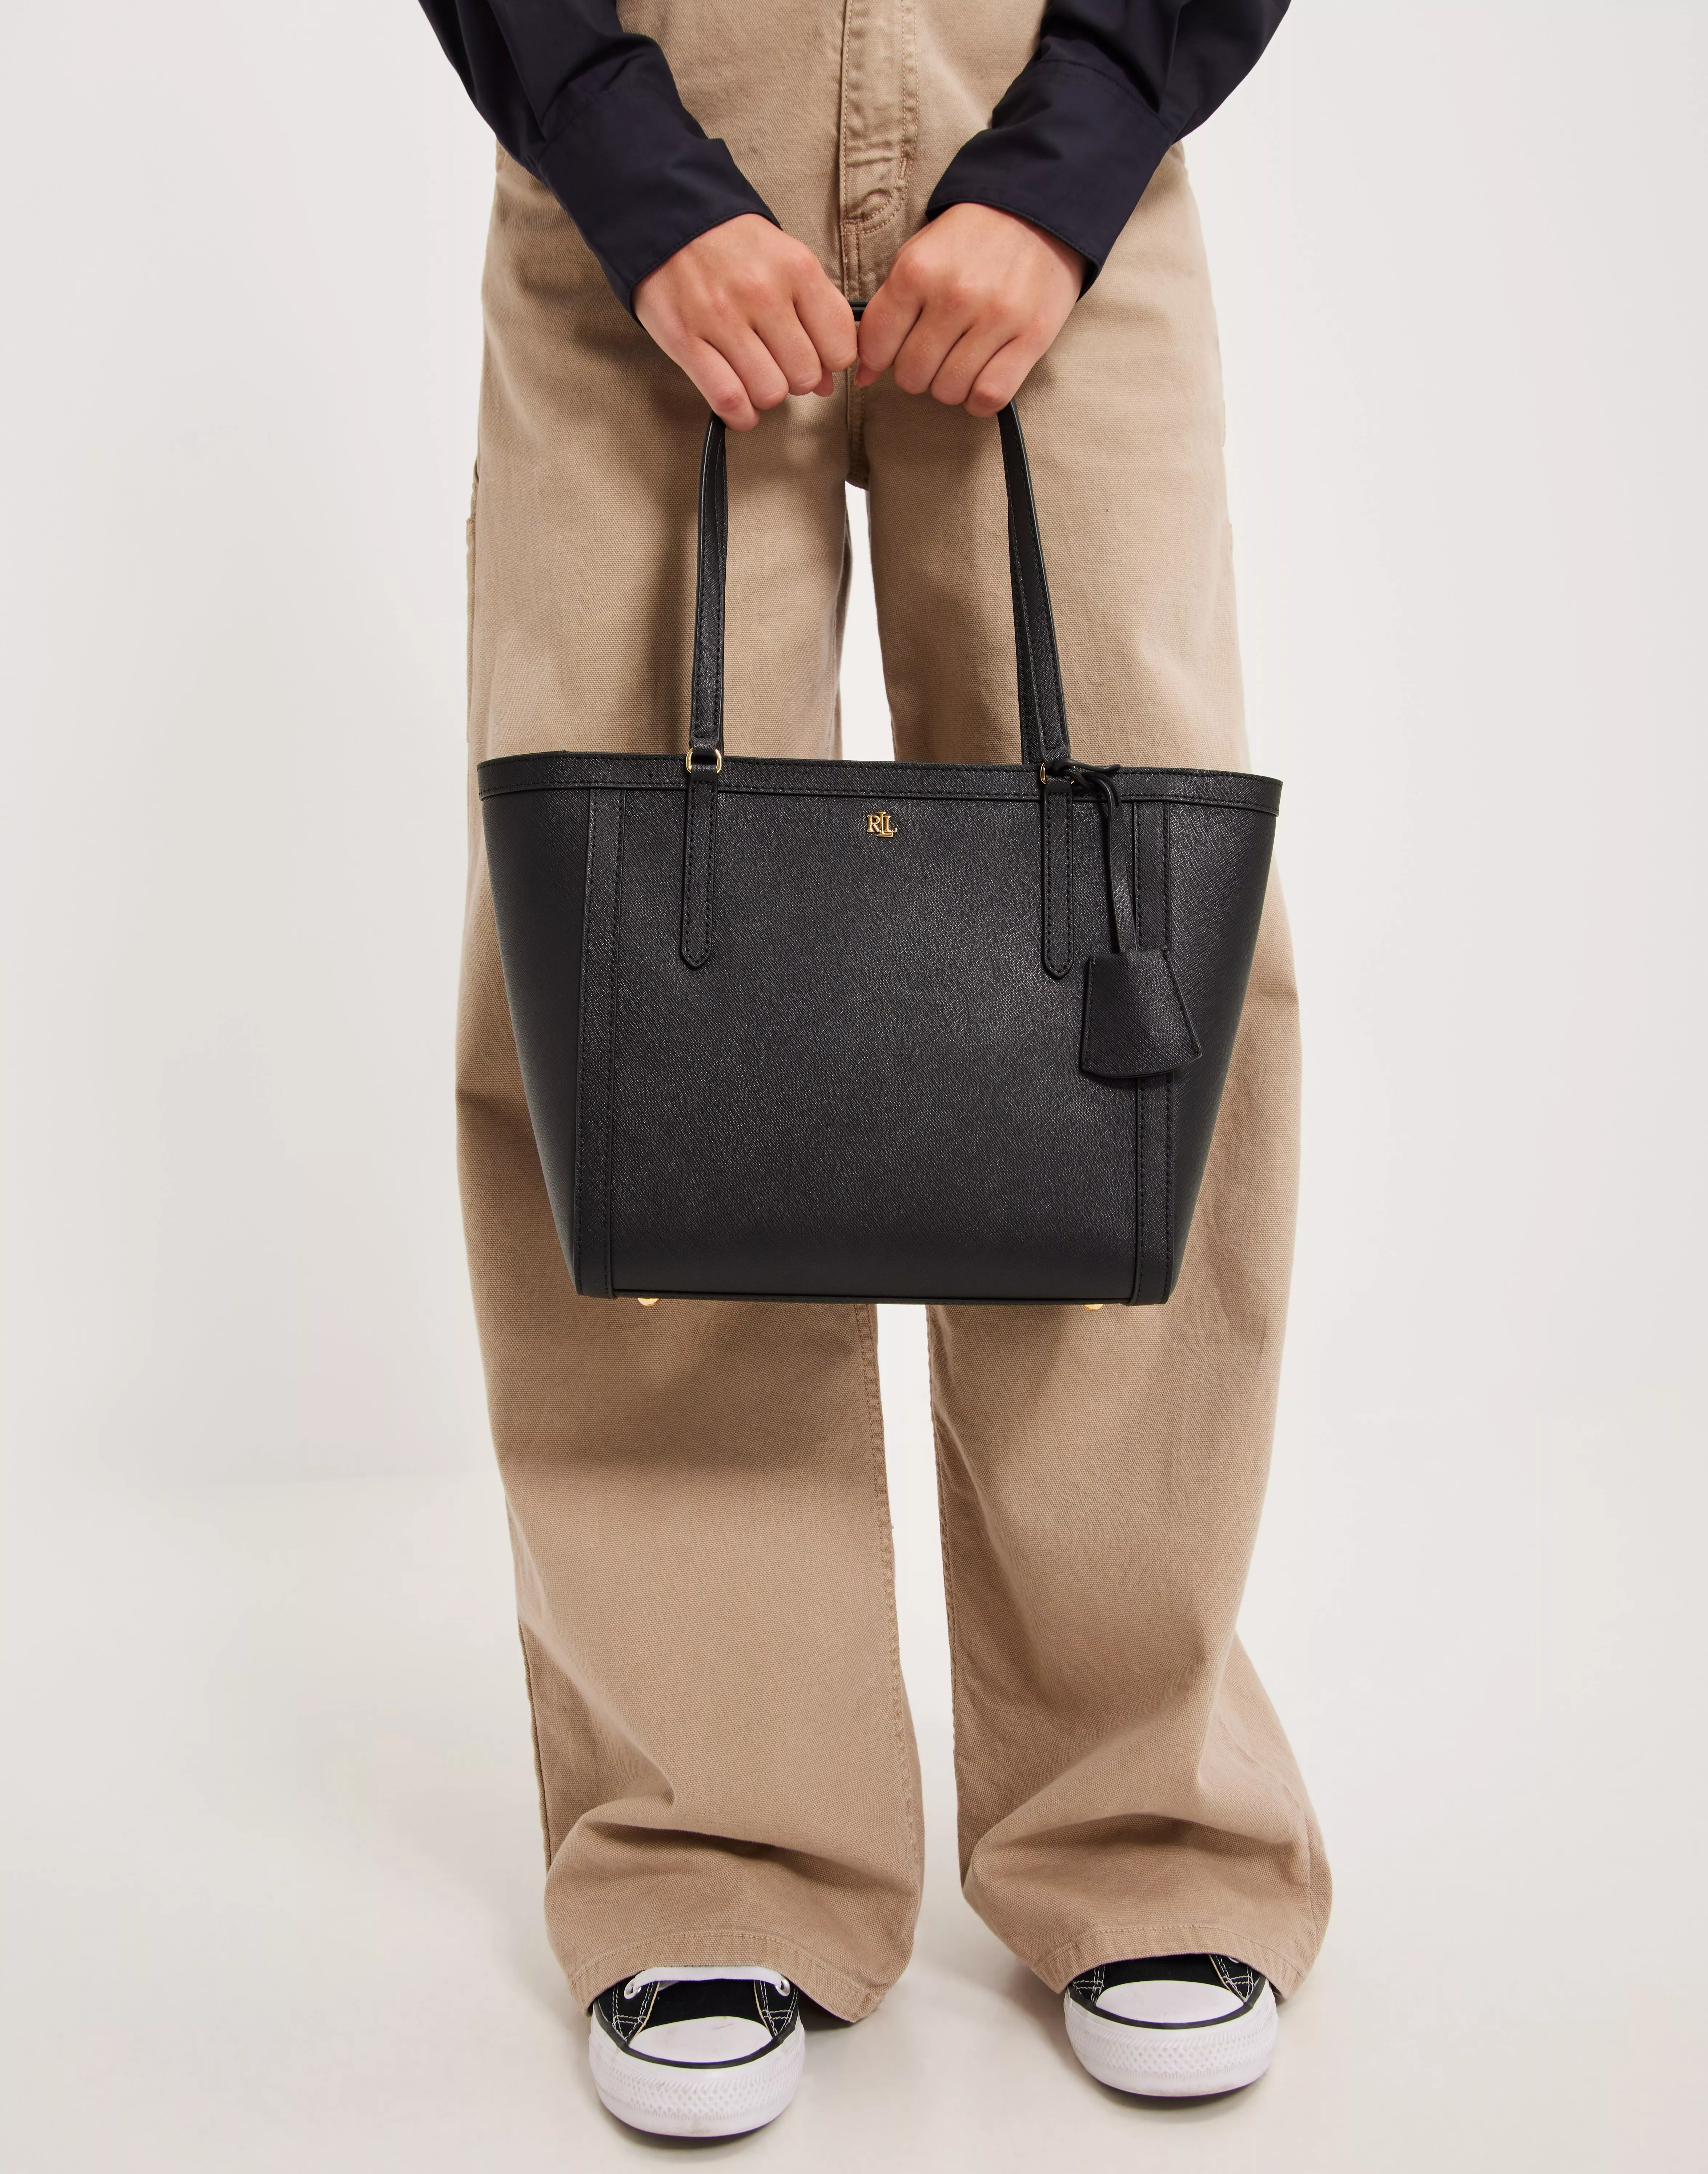 Lauren Ralph Lauren CLARE TOTE LARGE - Handbag - black 